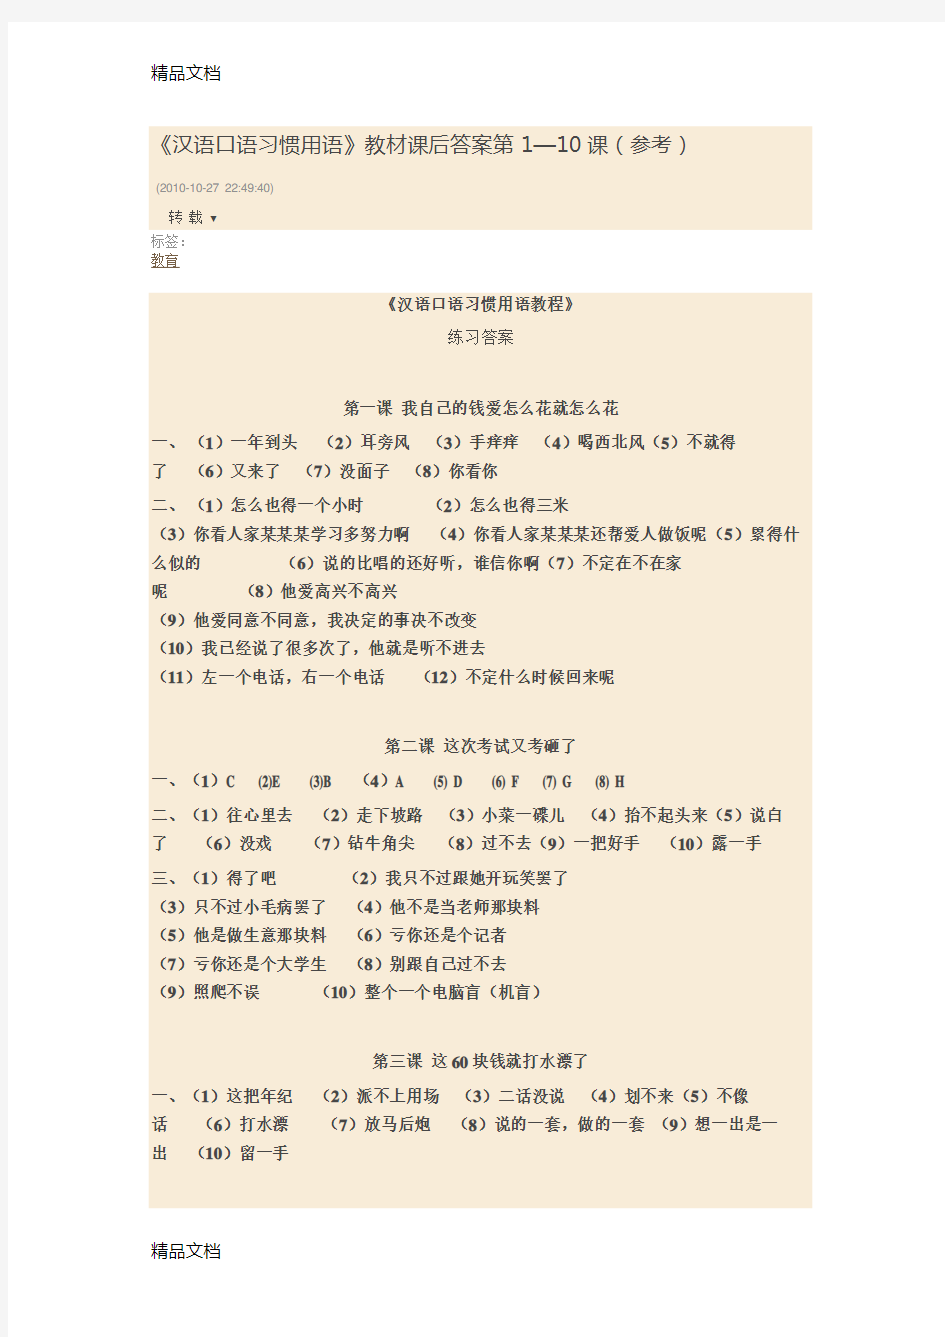 汉语口语习惯用语资料讲解